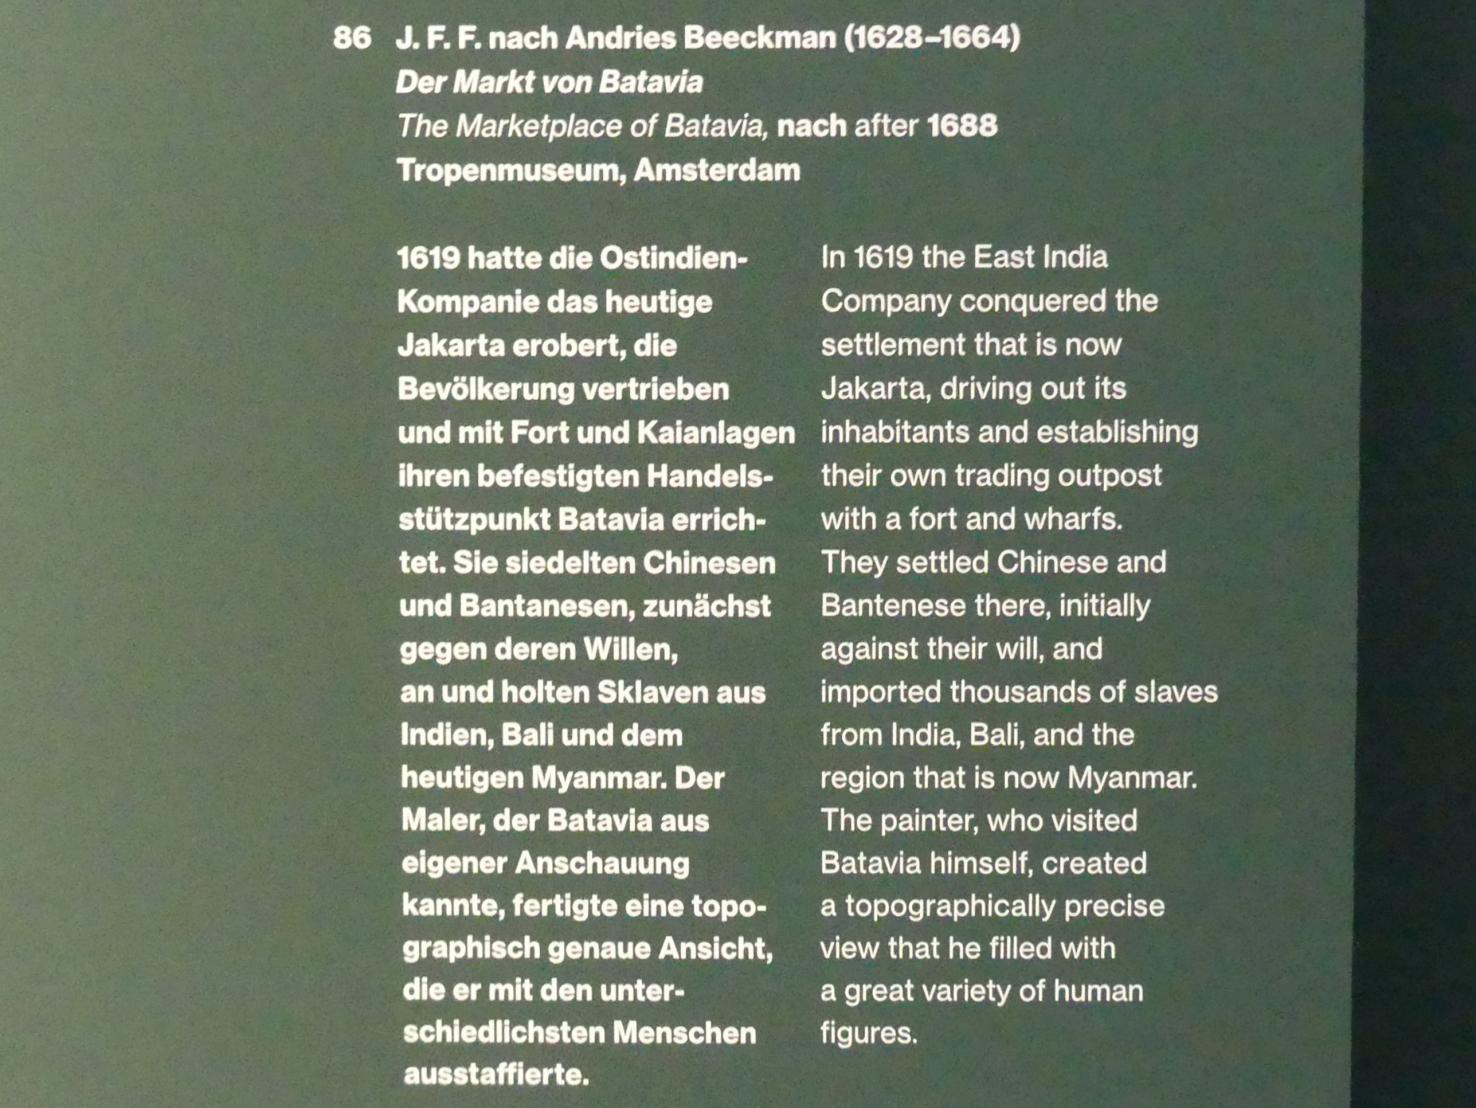 J. F. F. (1689), Der Markt von Batavia, Potsdam, Museum Barberini, Ausstellung "Rembrandts Orient" vom 13.03.-27.06.2021, Saal A5, nach 1688, Bild 2/2